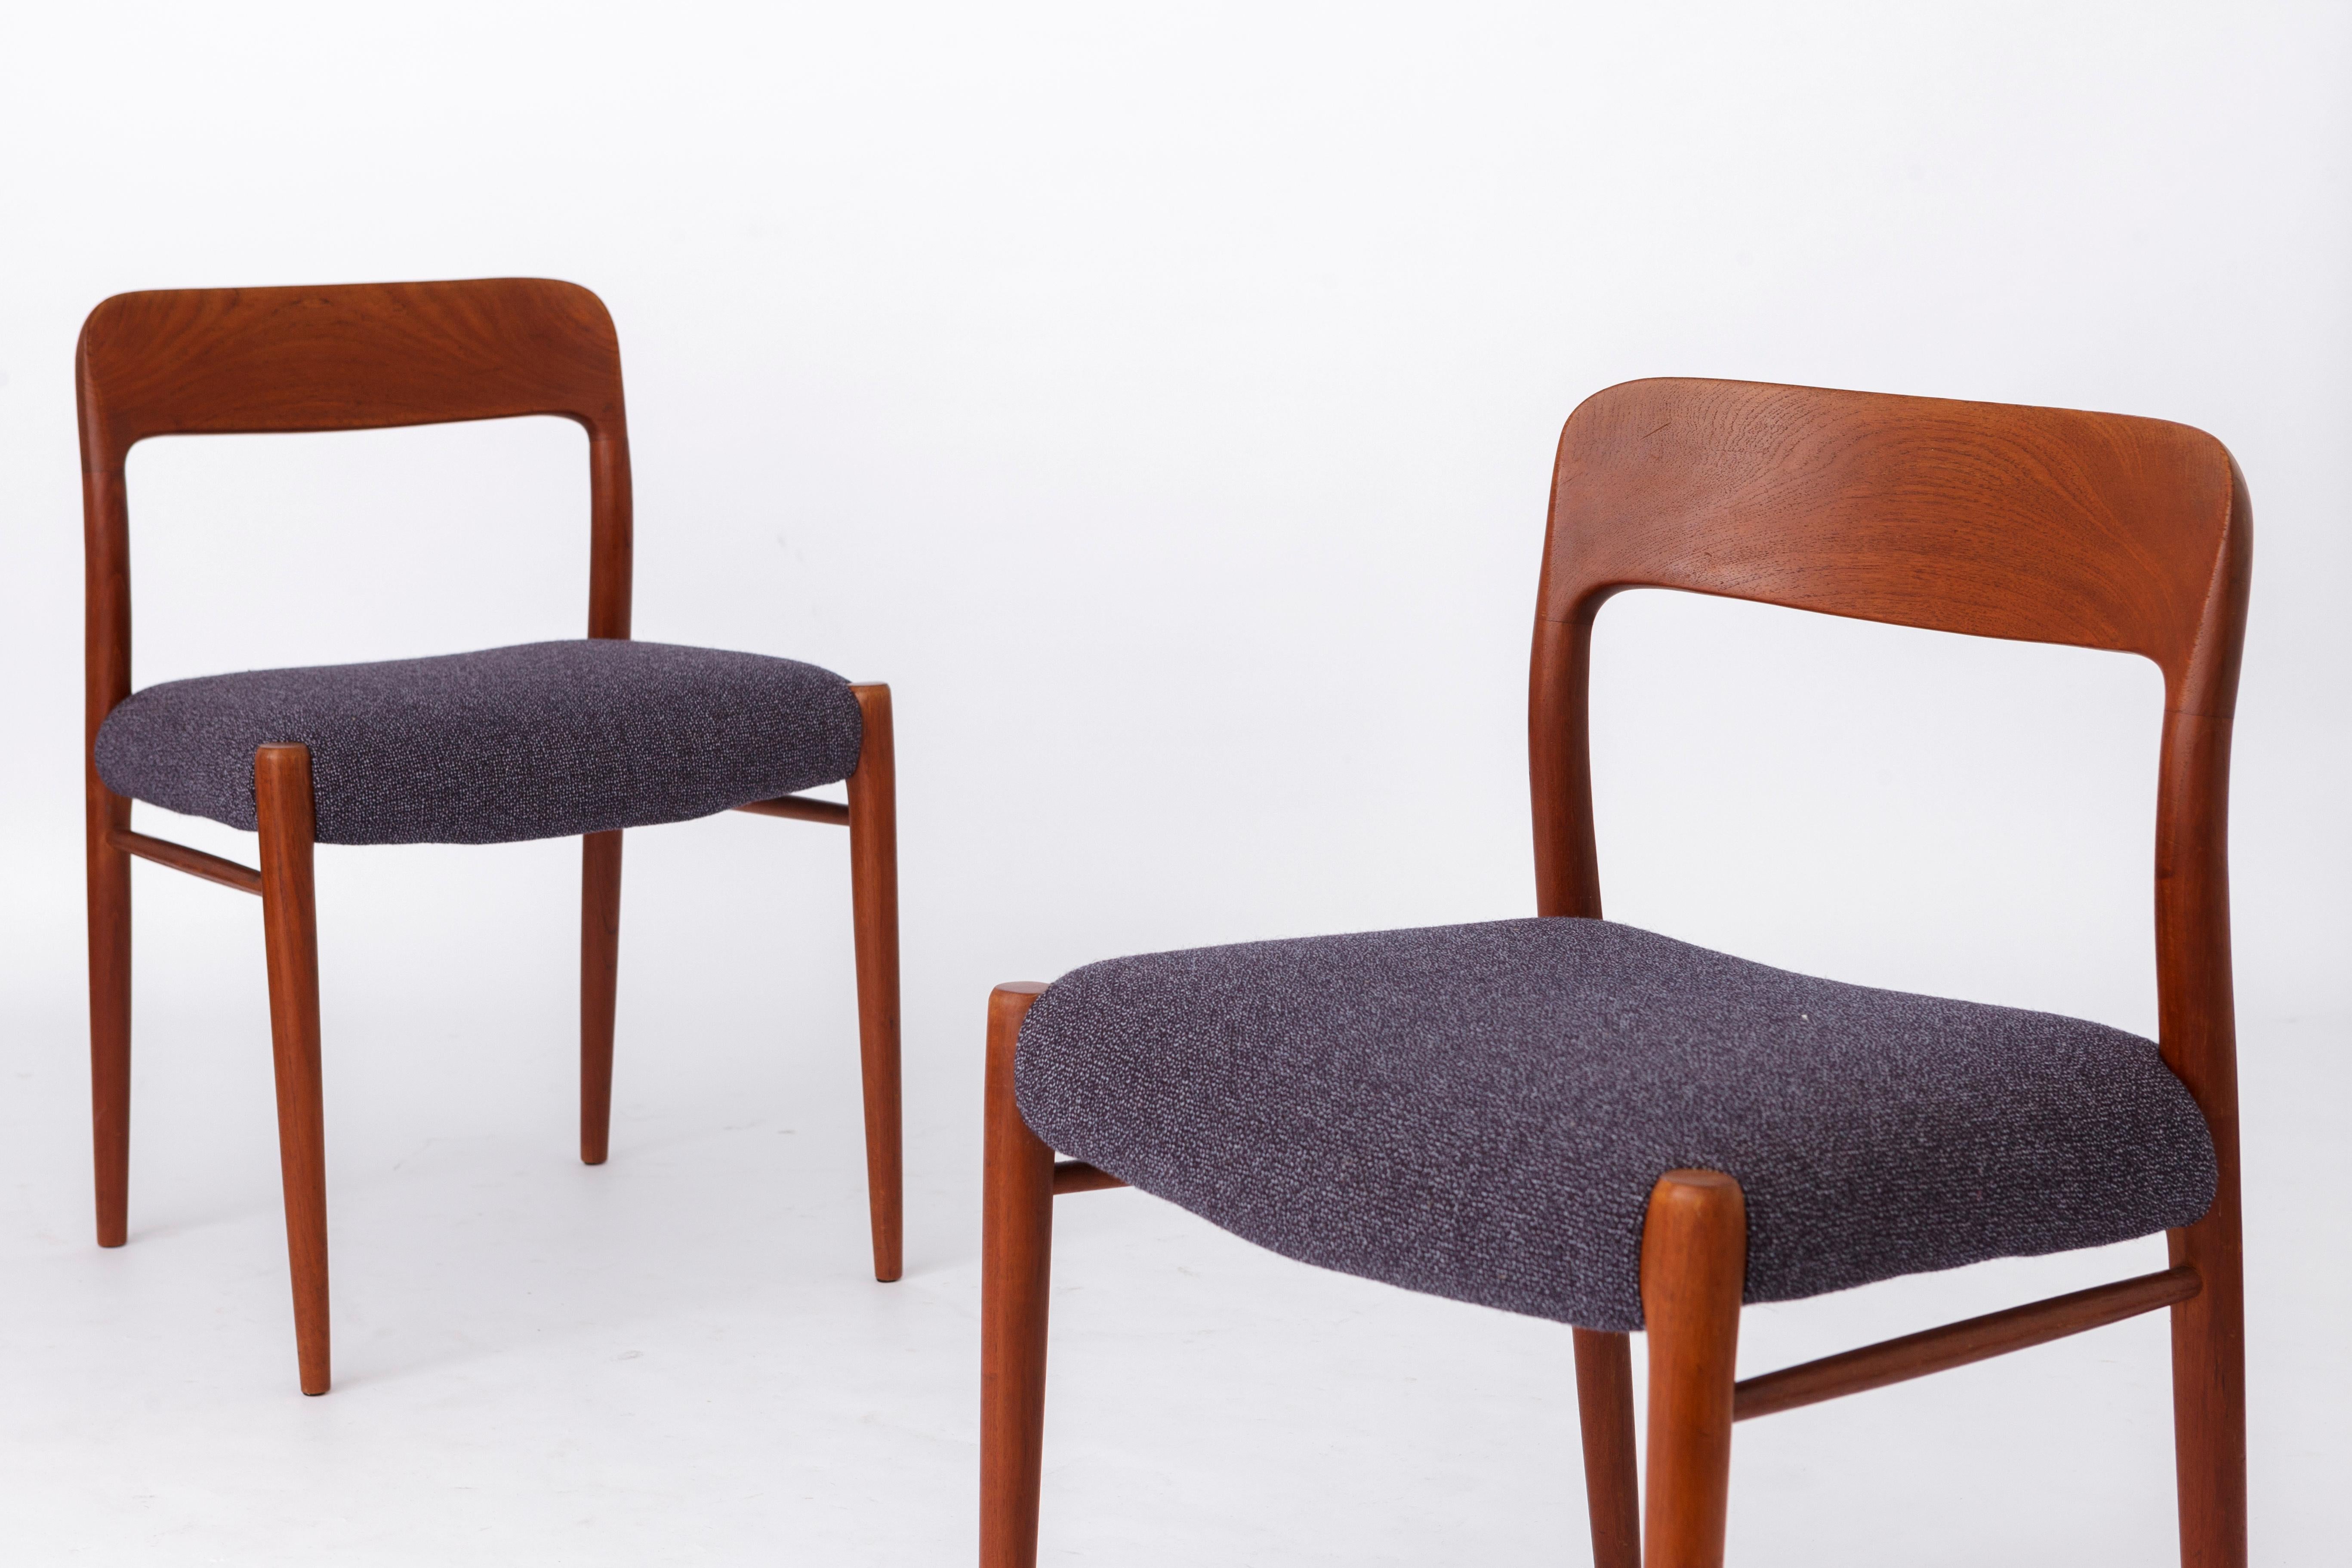 2 Vintage-Stühle von Niels Otto Moller. 
Modell: 75 aus Teakholz aus den 1950er Jahren. 
Der angezeigte Preis gilt für 2 Stühle. 

Stabiler Rahmen aus Teakholz. Aufgearbeitet und geölt.
Der dunkelblaue Textilsitzbezug wurde von einem professionellen